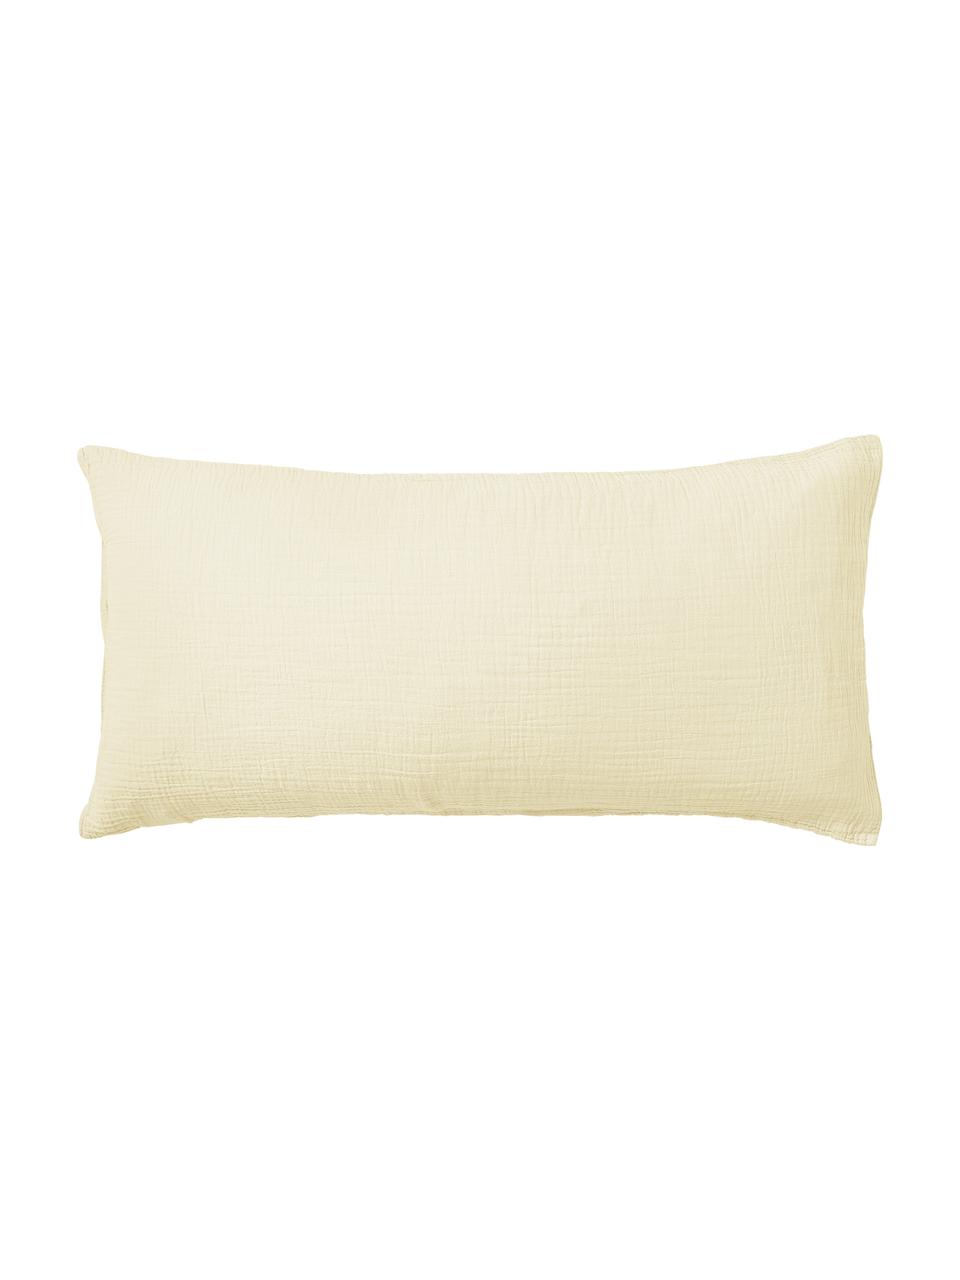 Poszewka na poduszkę z muślinu bawełnianego Odile, Żółty, S 40 x D 80 cm